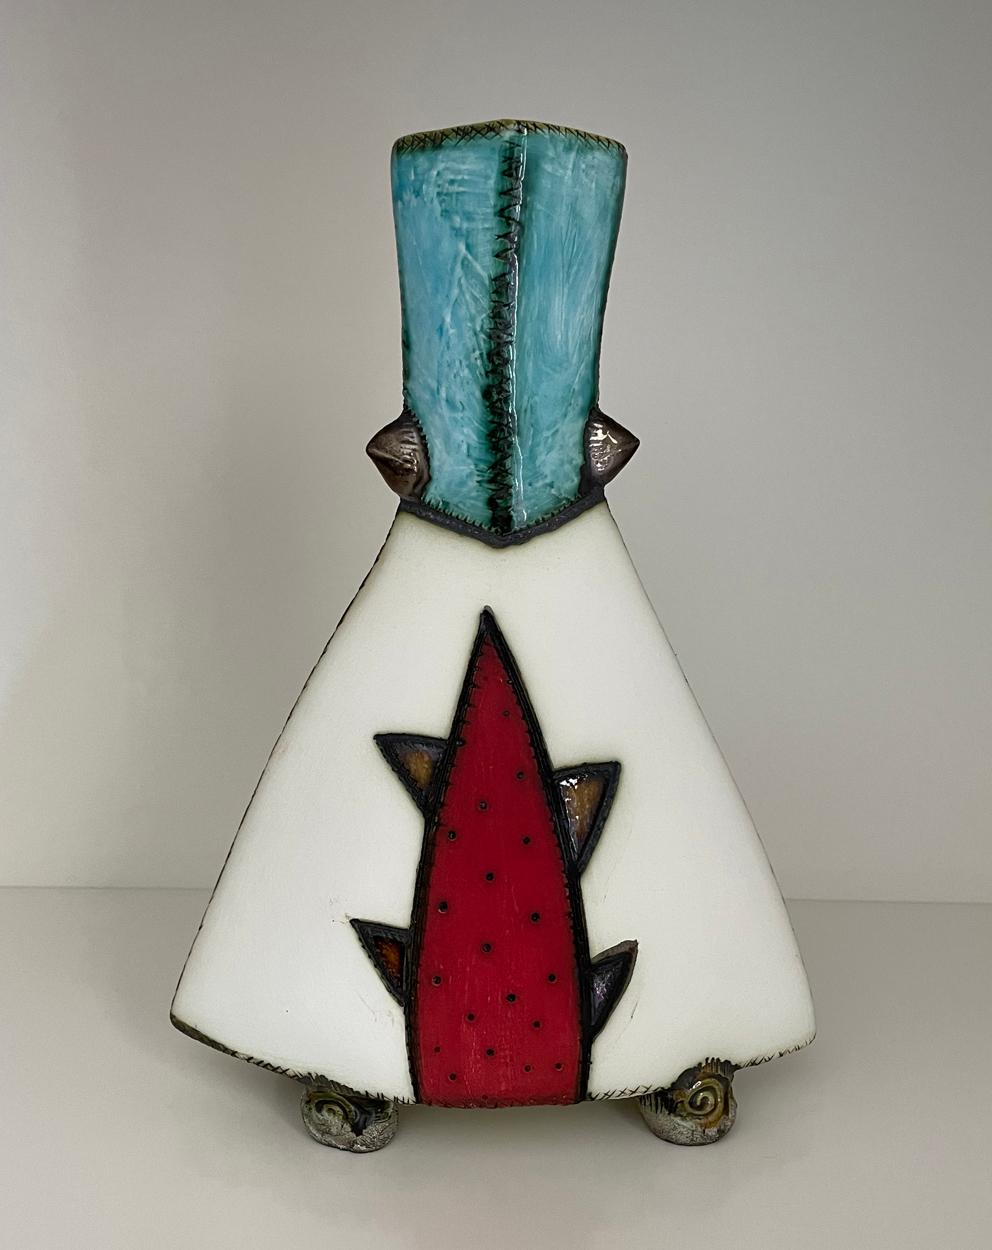 Un petit vase en poterie de la céramiste sud-africaine Charmaine Haines, largement collectionnée, produit en 2020.


Charmaine Haines est née en 1963 à Grahamstown et a suivi la formation de Hylton Nel au Technikon de Port Elizabeth. Elle a